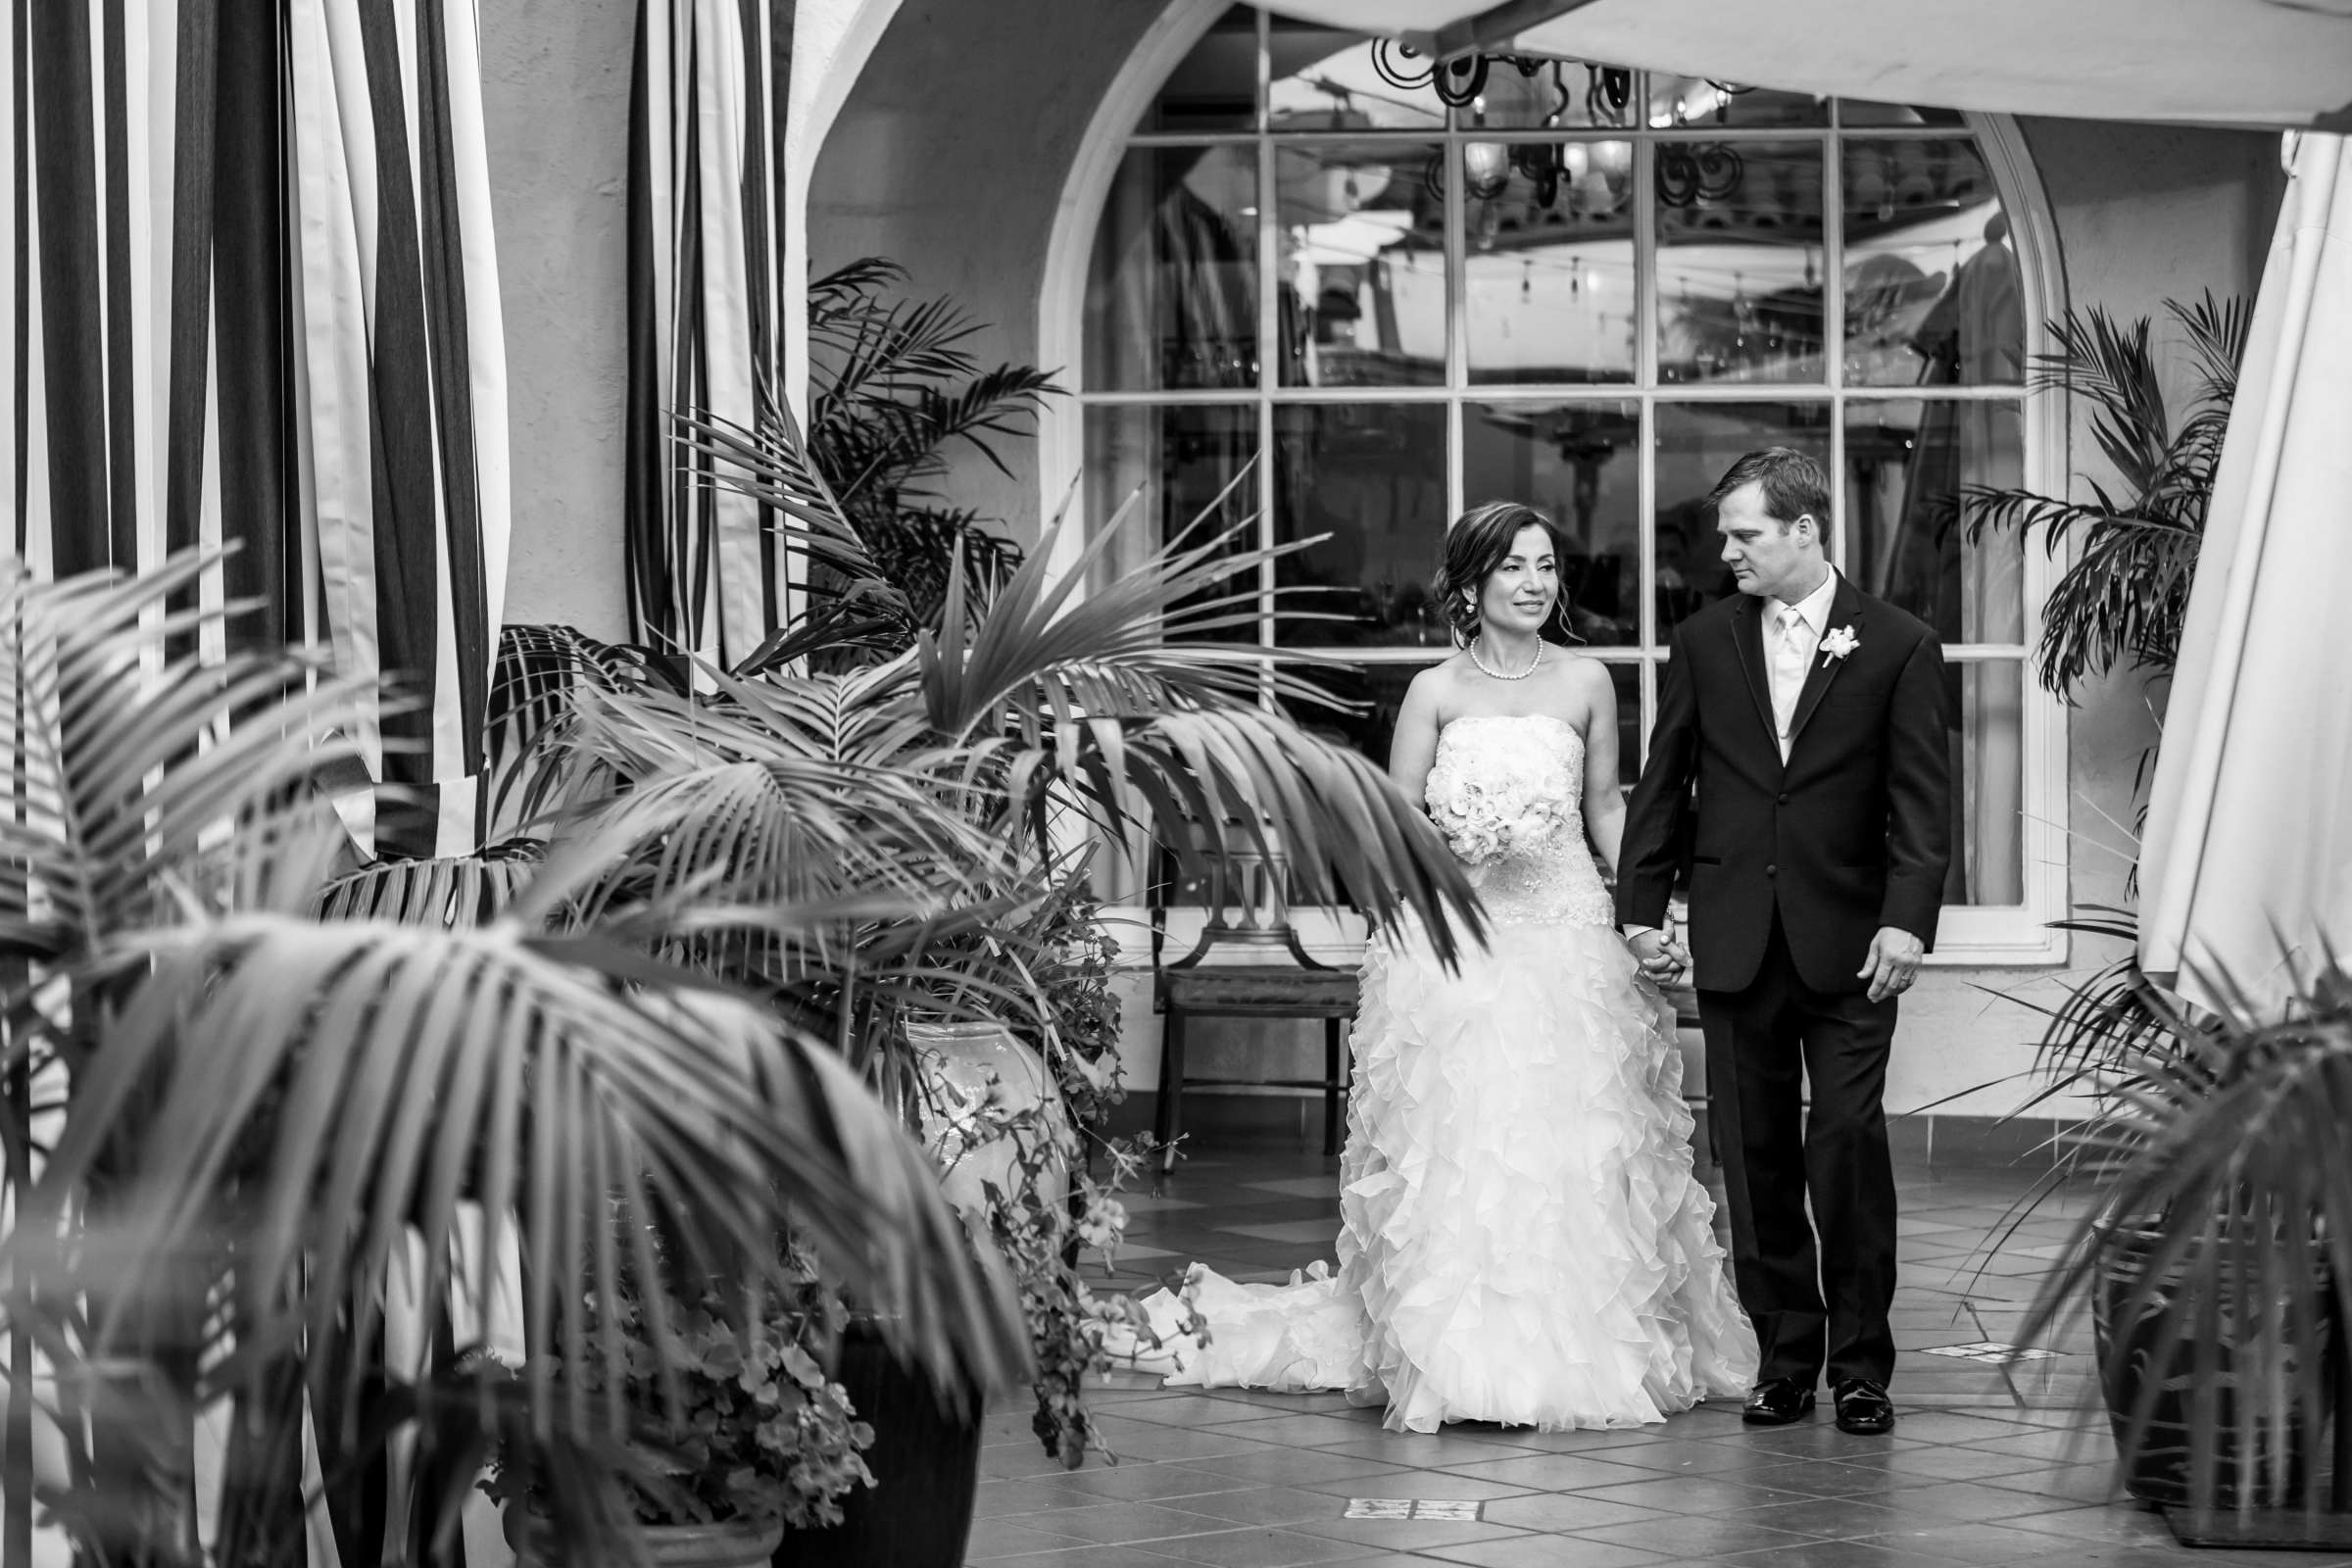 La Valencia Wedding coordinated by La Valencia, Soheila and Steven Wedding Photo #303042 by True Photography